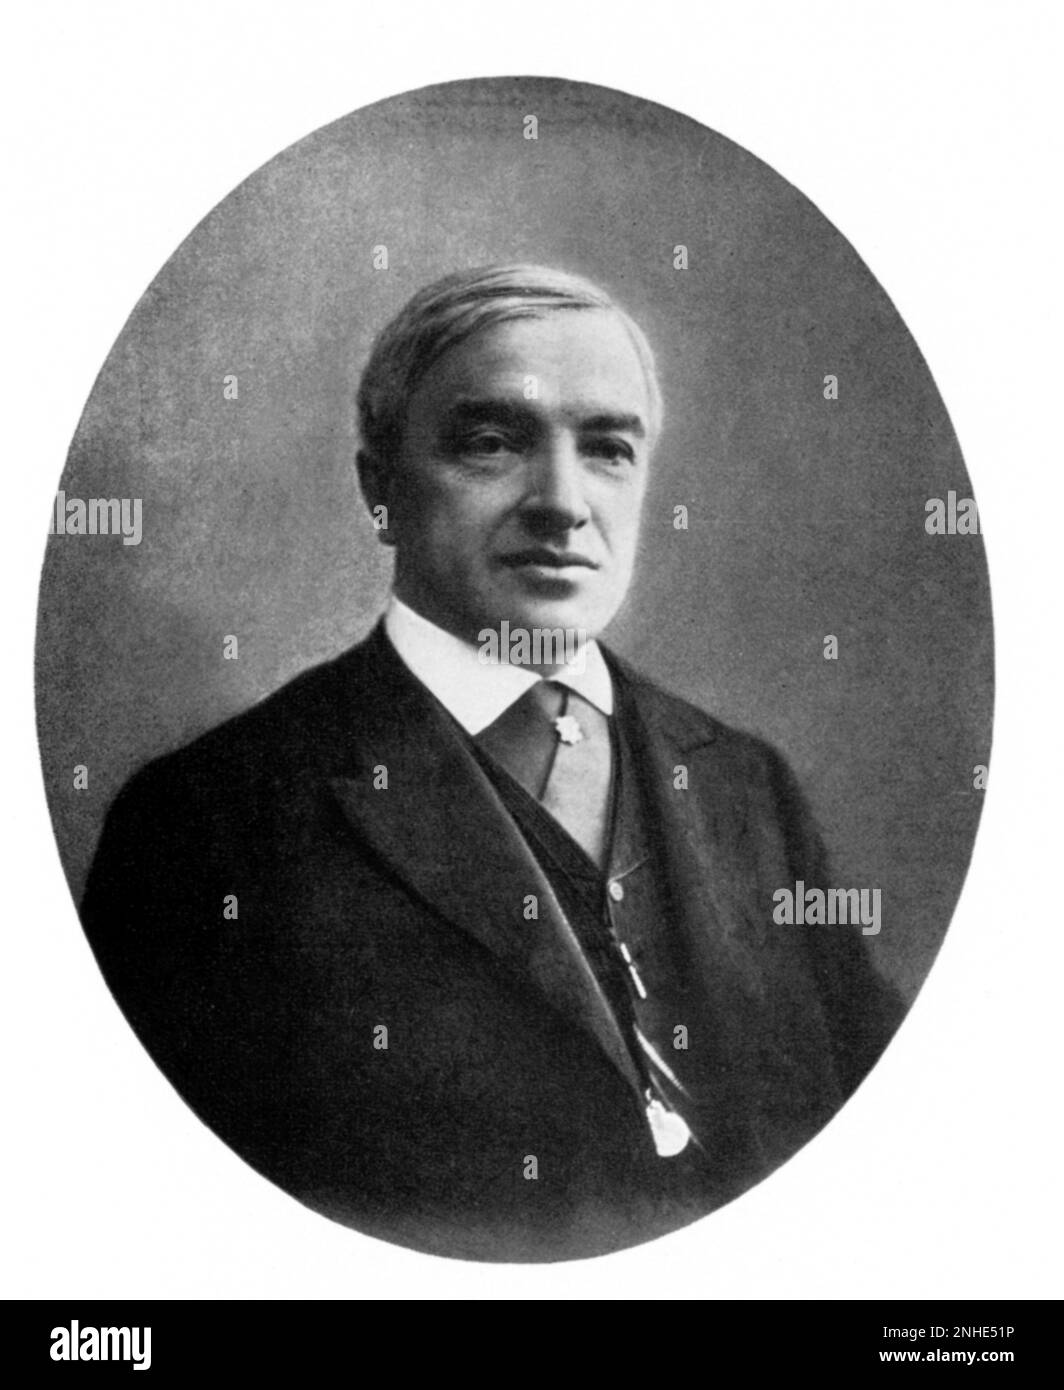 1883 ca. : SERGEI ALEXEIEV , padre del teatro attore russo , regista e teorico Konstantin Sergeevic STANISLAVSKIJ ( nato K. S. Alekseev , Moskow 1863 - 1938 ) , fondatore di V.I. Nemirovic Dancenko del TEATRO D'ARTE di Moskow nel 1898 , amico di CECHOV e GORKIJ - TEATRO - REGISTRAZIONE TEATRALE - intellettuale - ritratto - ritratto - Stanislavski - Stanislavsky - attore - cravatta - colletto - fermacravatta - pin - cravatta ---- Archivio GBB Foto Stock